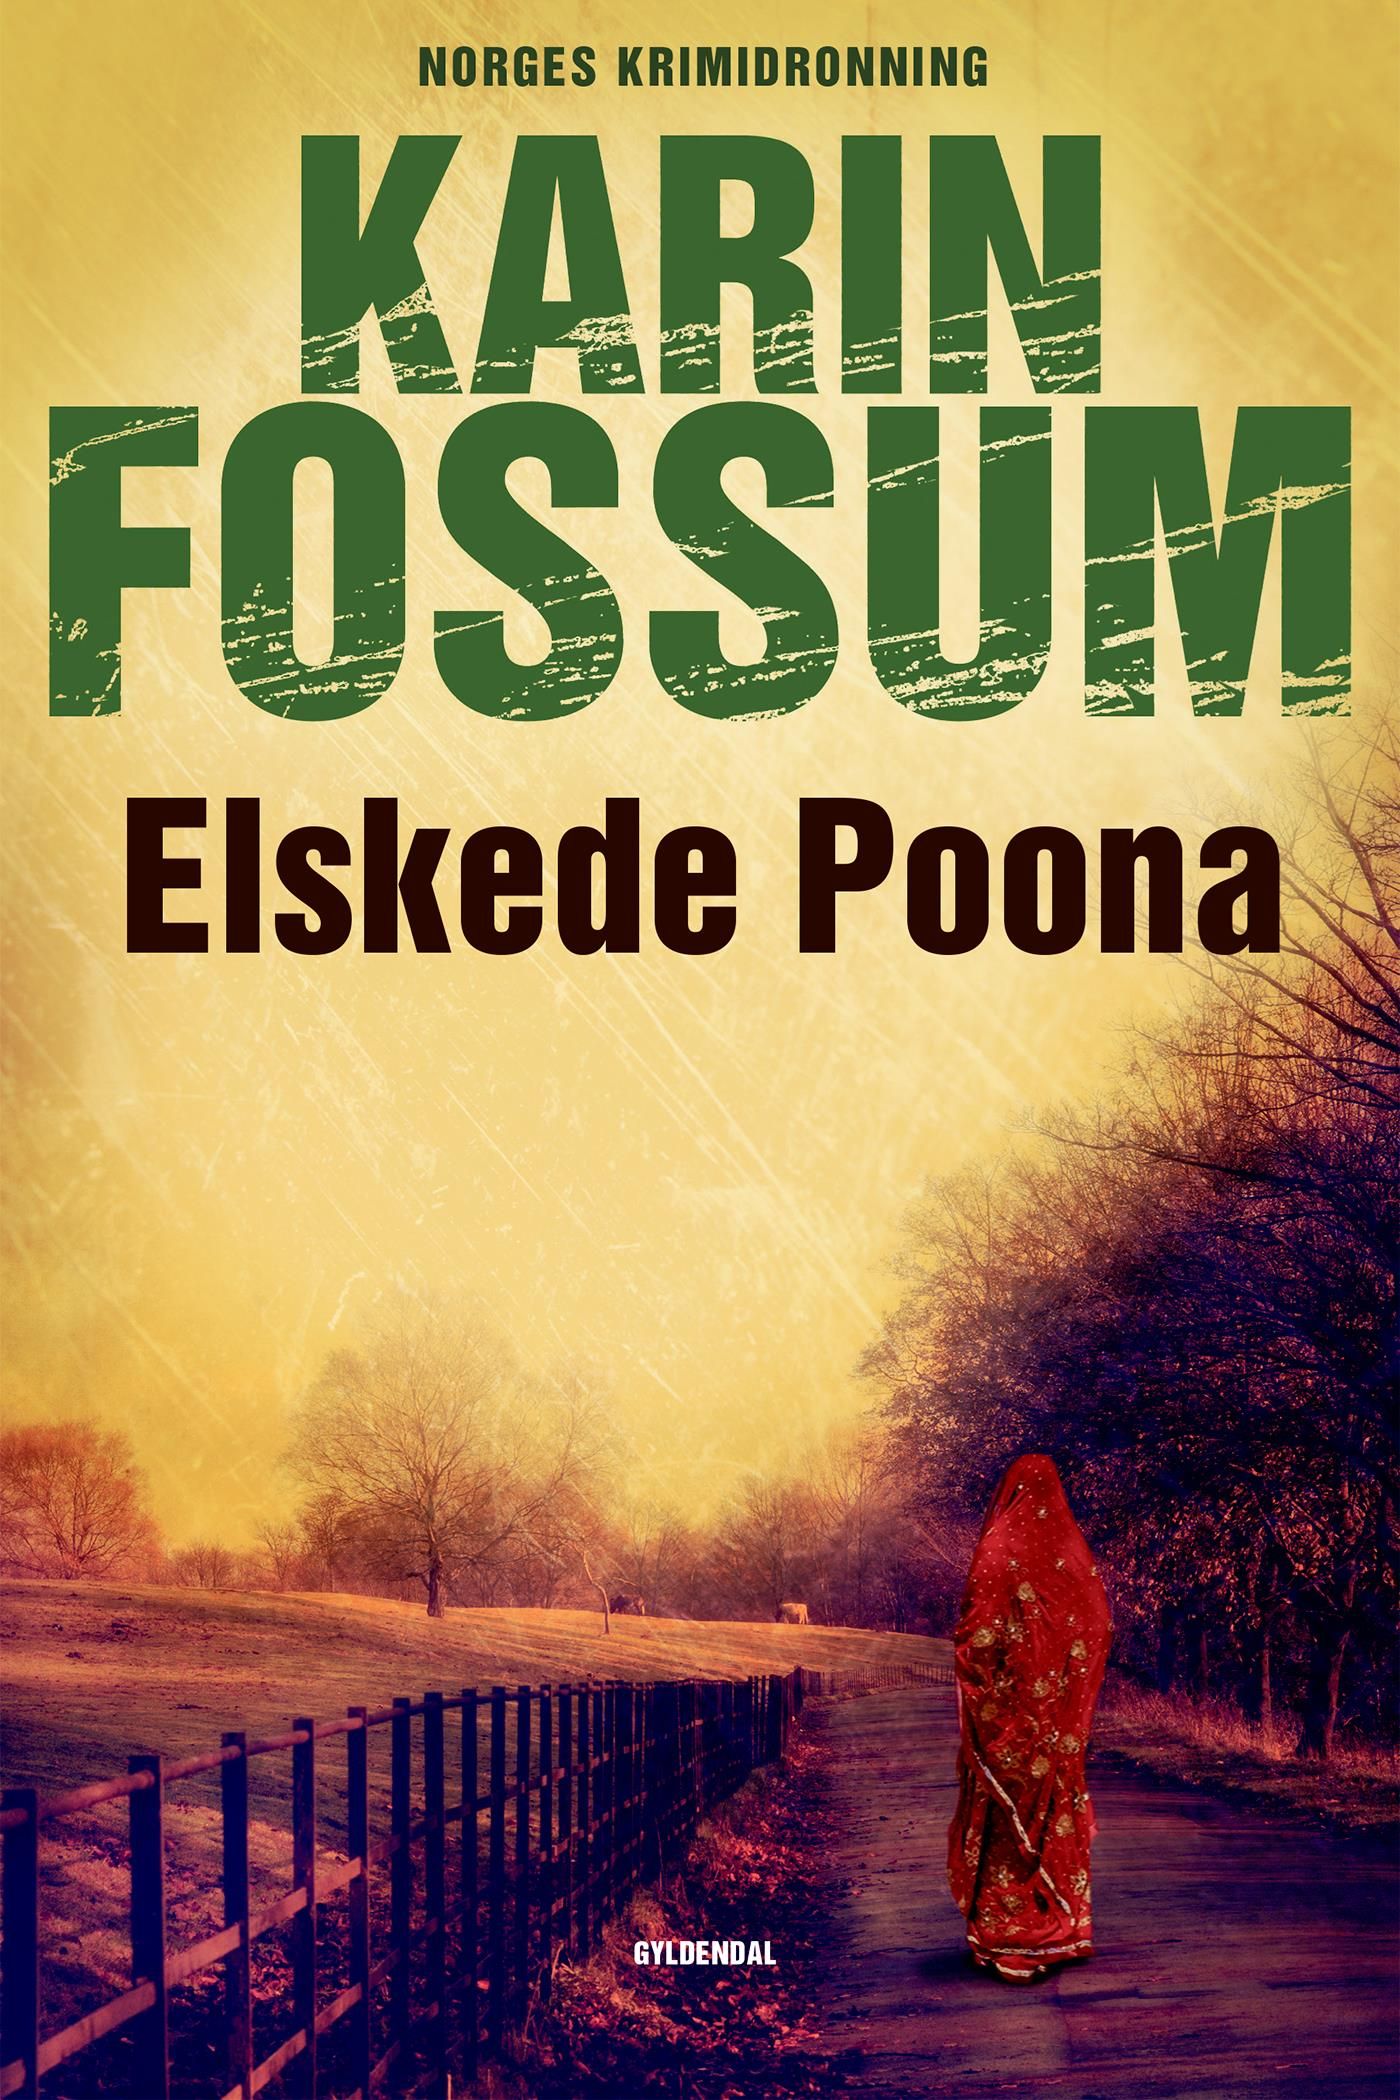 Elskede Poona, eBook by Karin Fossum